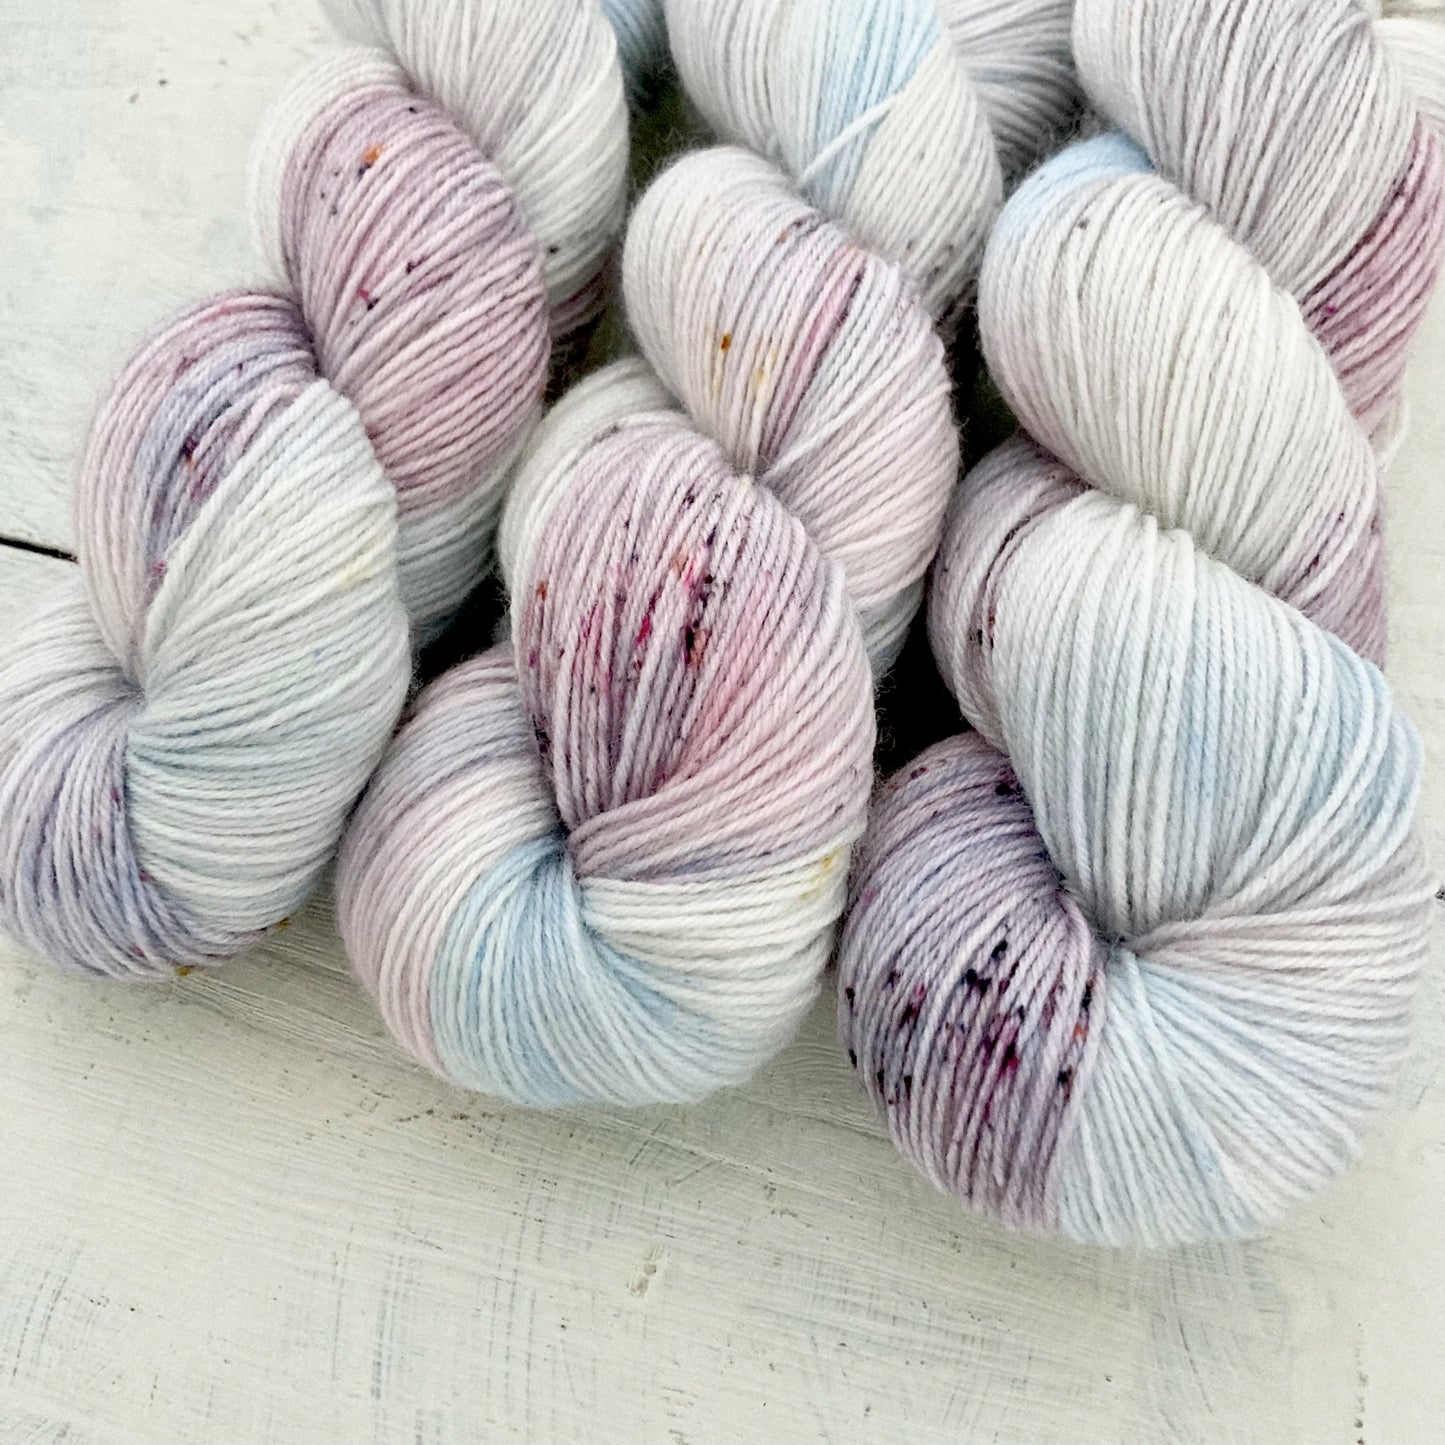 Hand-dyed yarn No.178 sock yarn "La vallée des cloches"